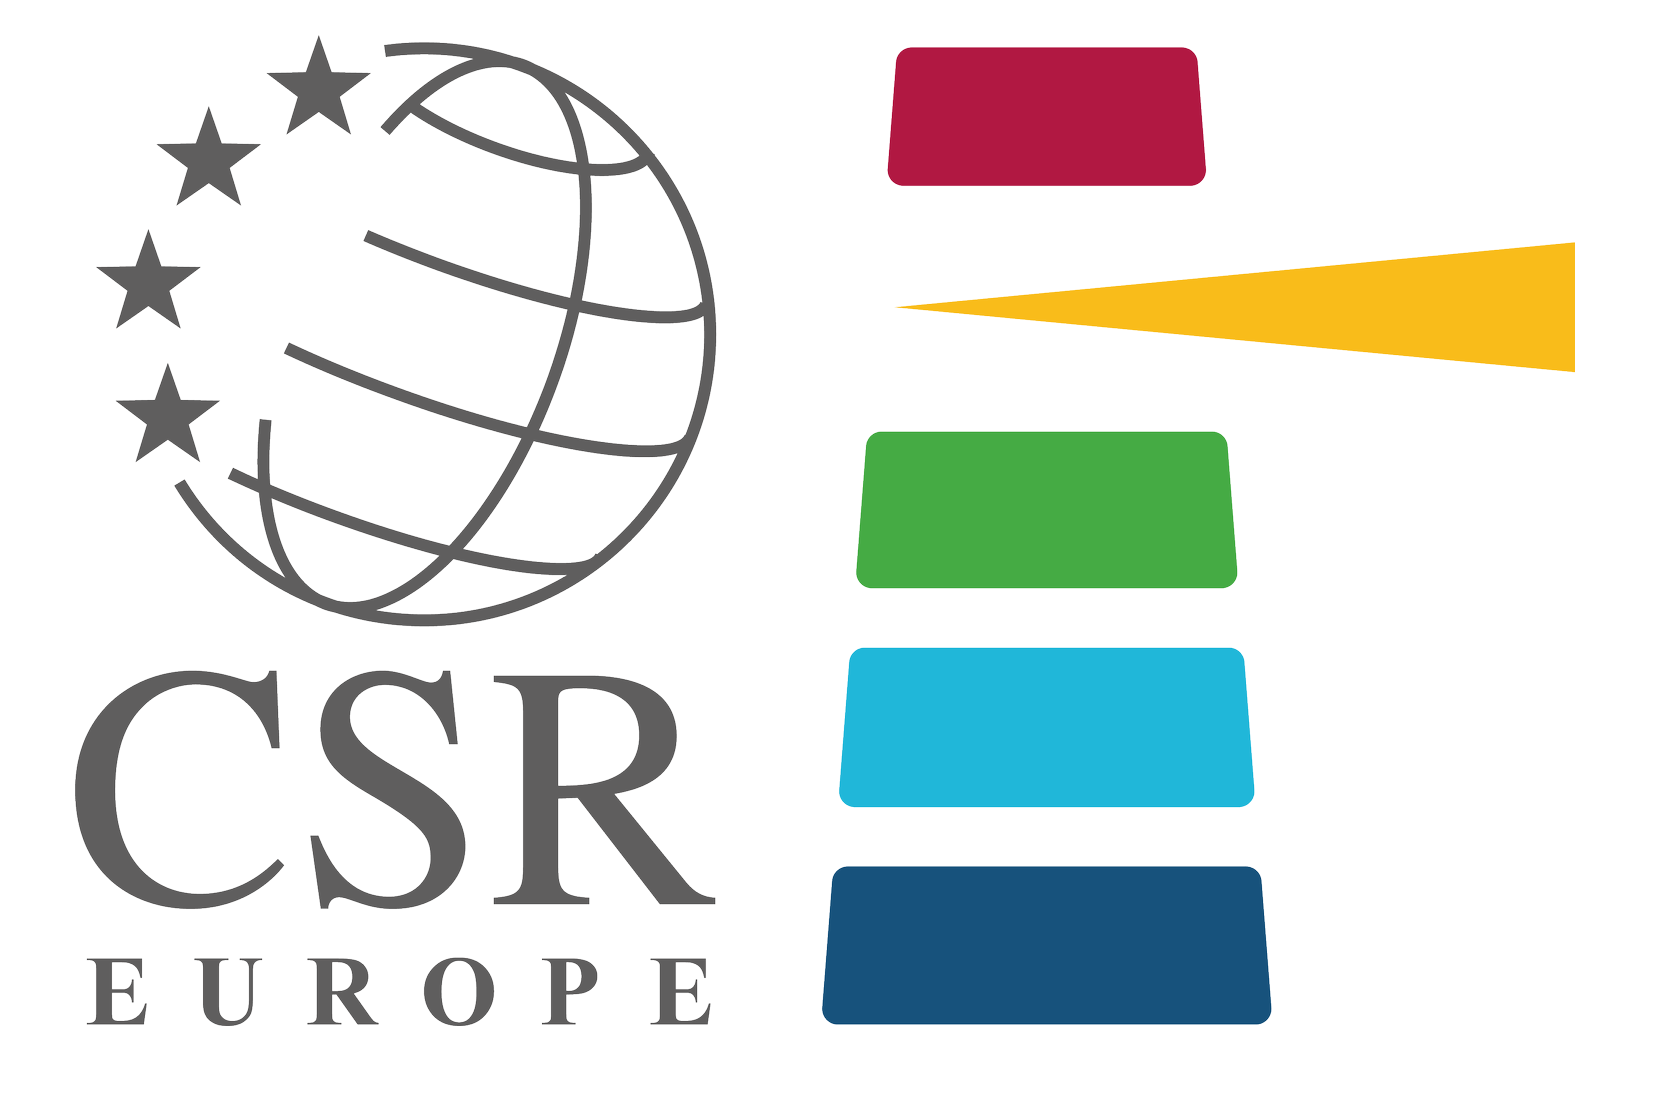 CSR Europe logo